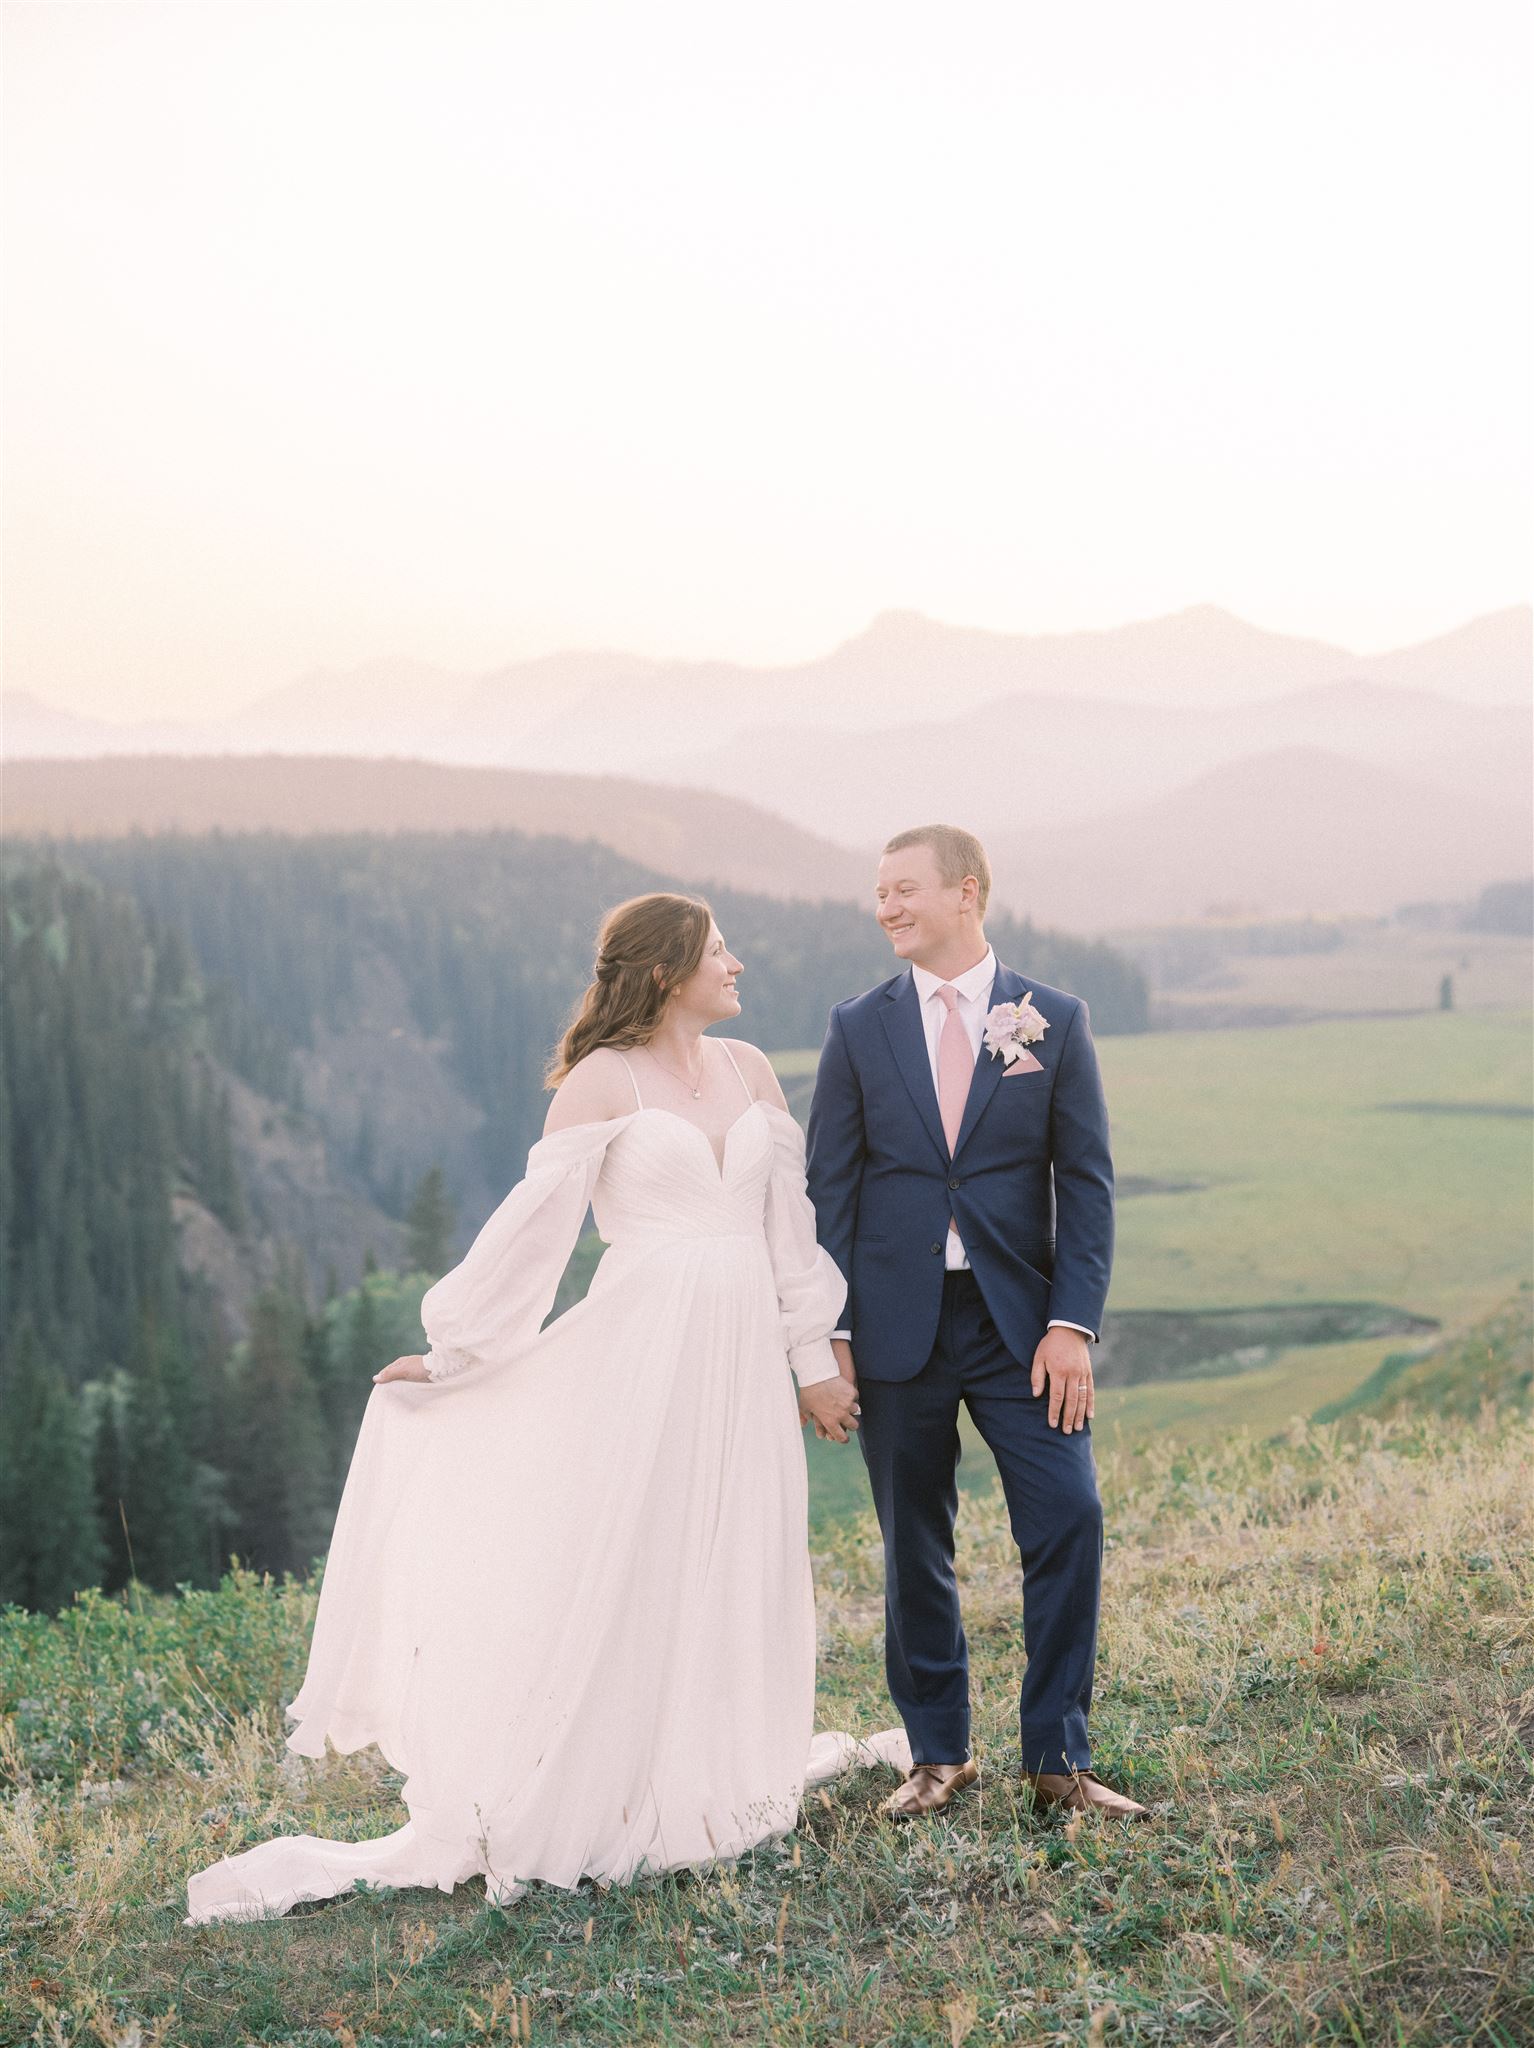 monique lhuillier dress, mountain elopement, canyon elopement, sunset valley wedding, valley wedding portraits, film wedding photographers